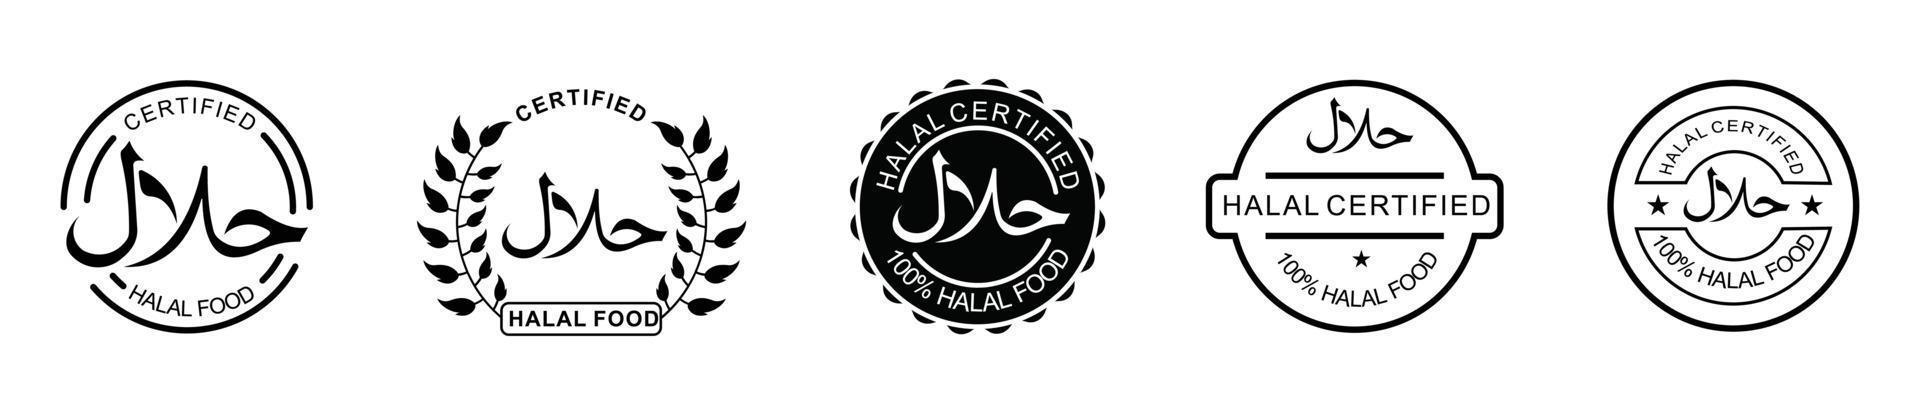 halal ikonuppsättning produkt emblem vektorillustration. uppsättning av halal livsmedelsprodukter etiketter, vektor halal tecken certifikat tag.